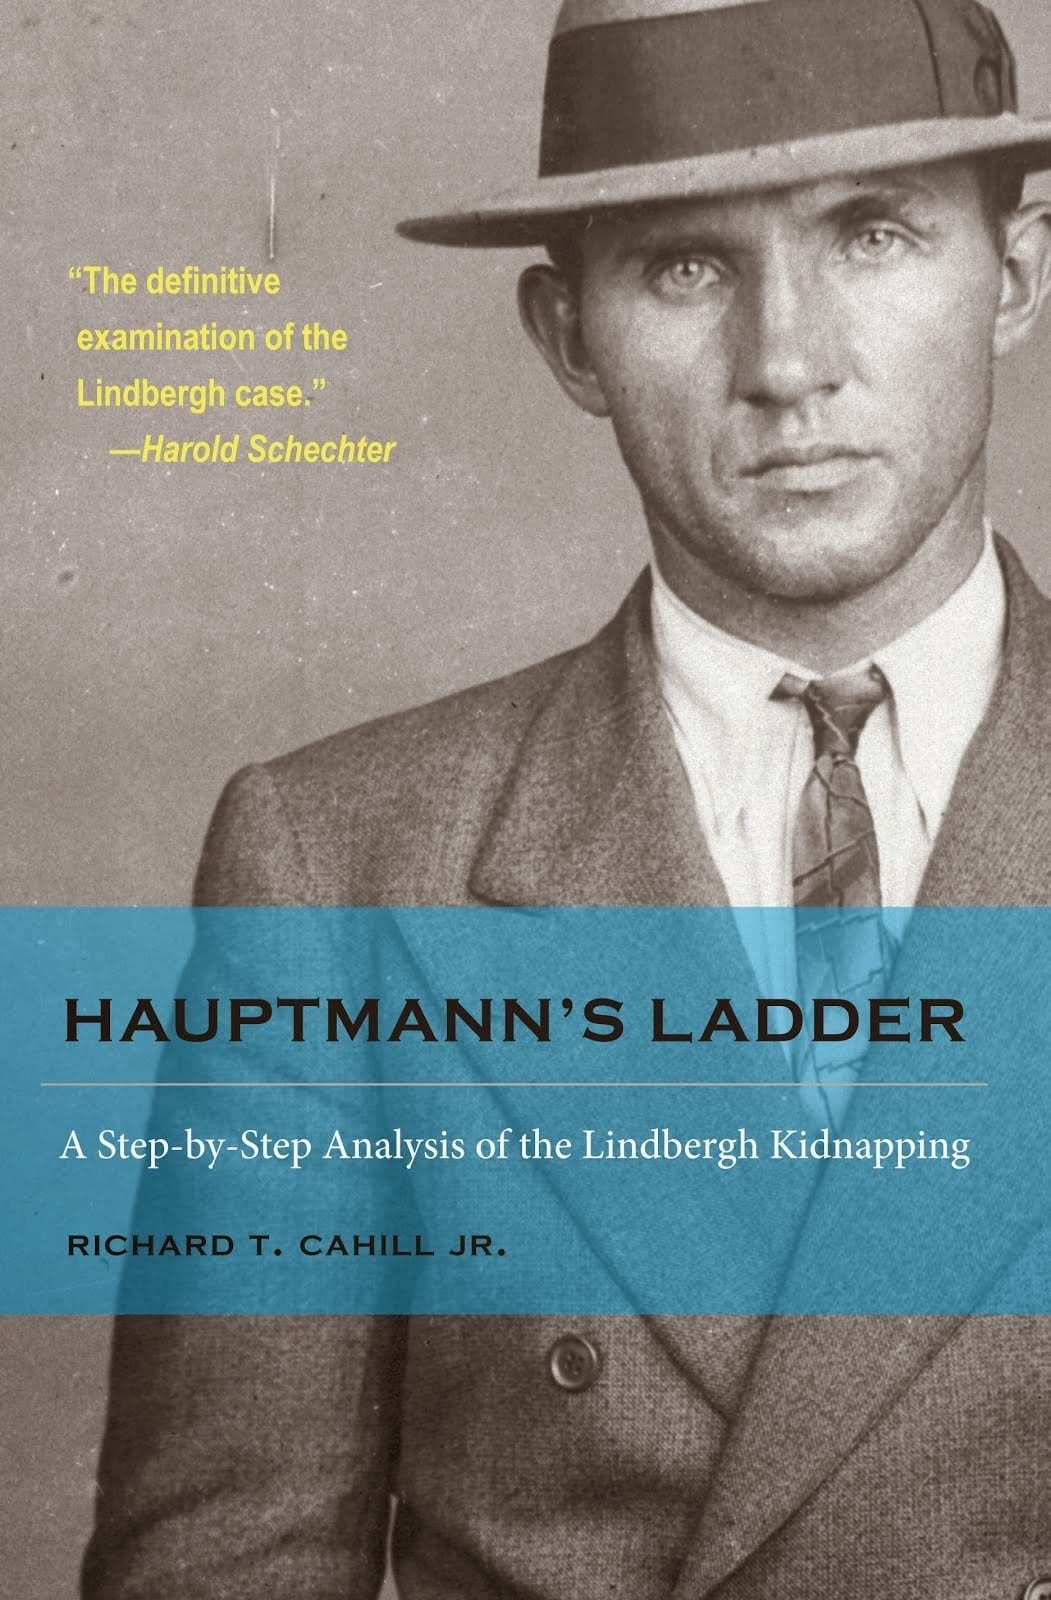 Hauptmann's Ladder by Richard T. Cahill Jr.